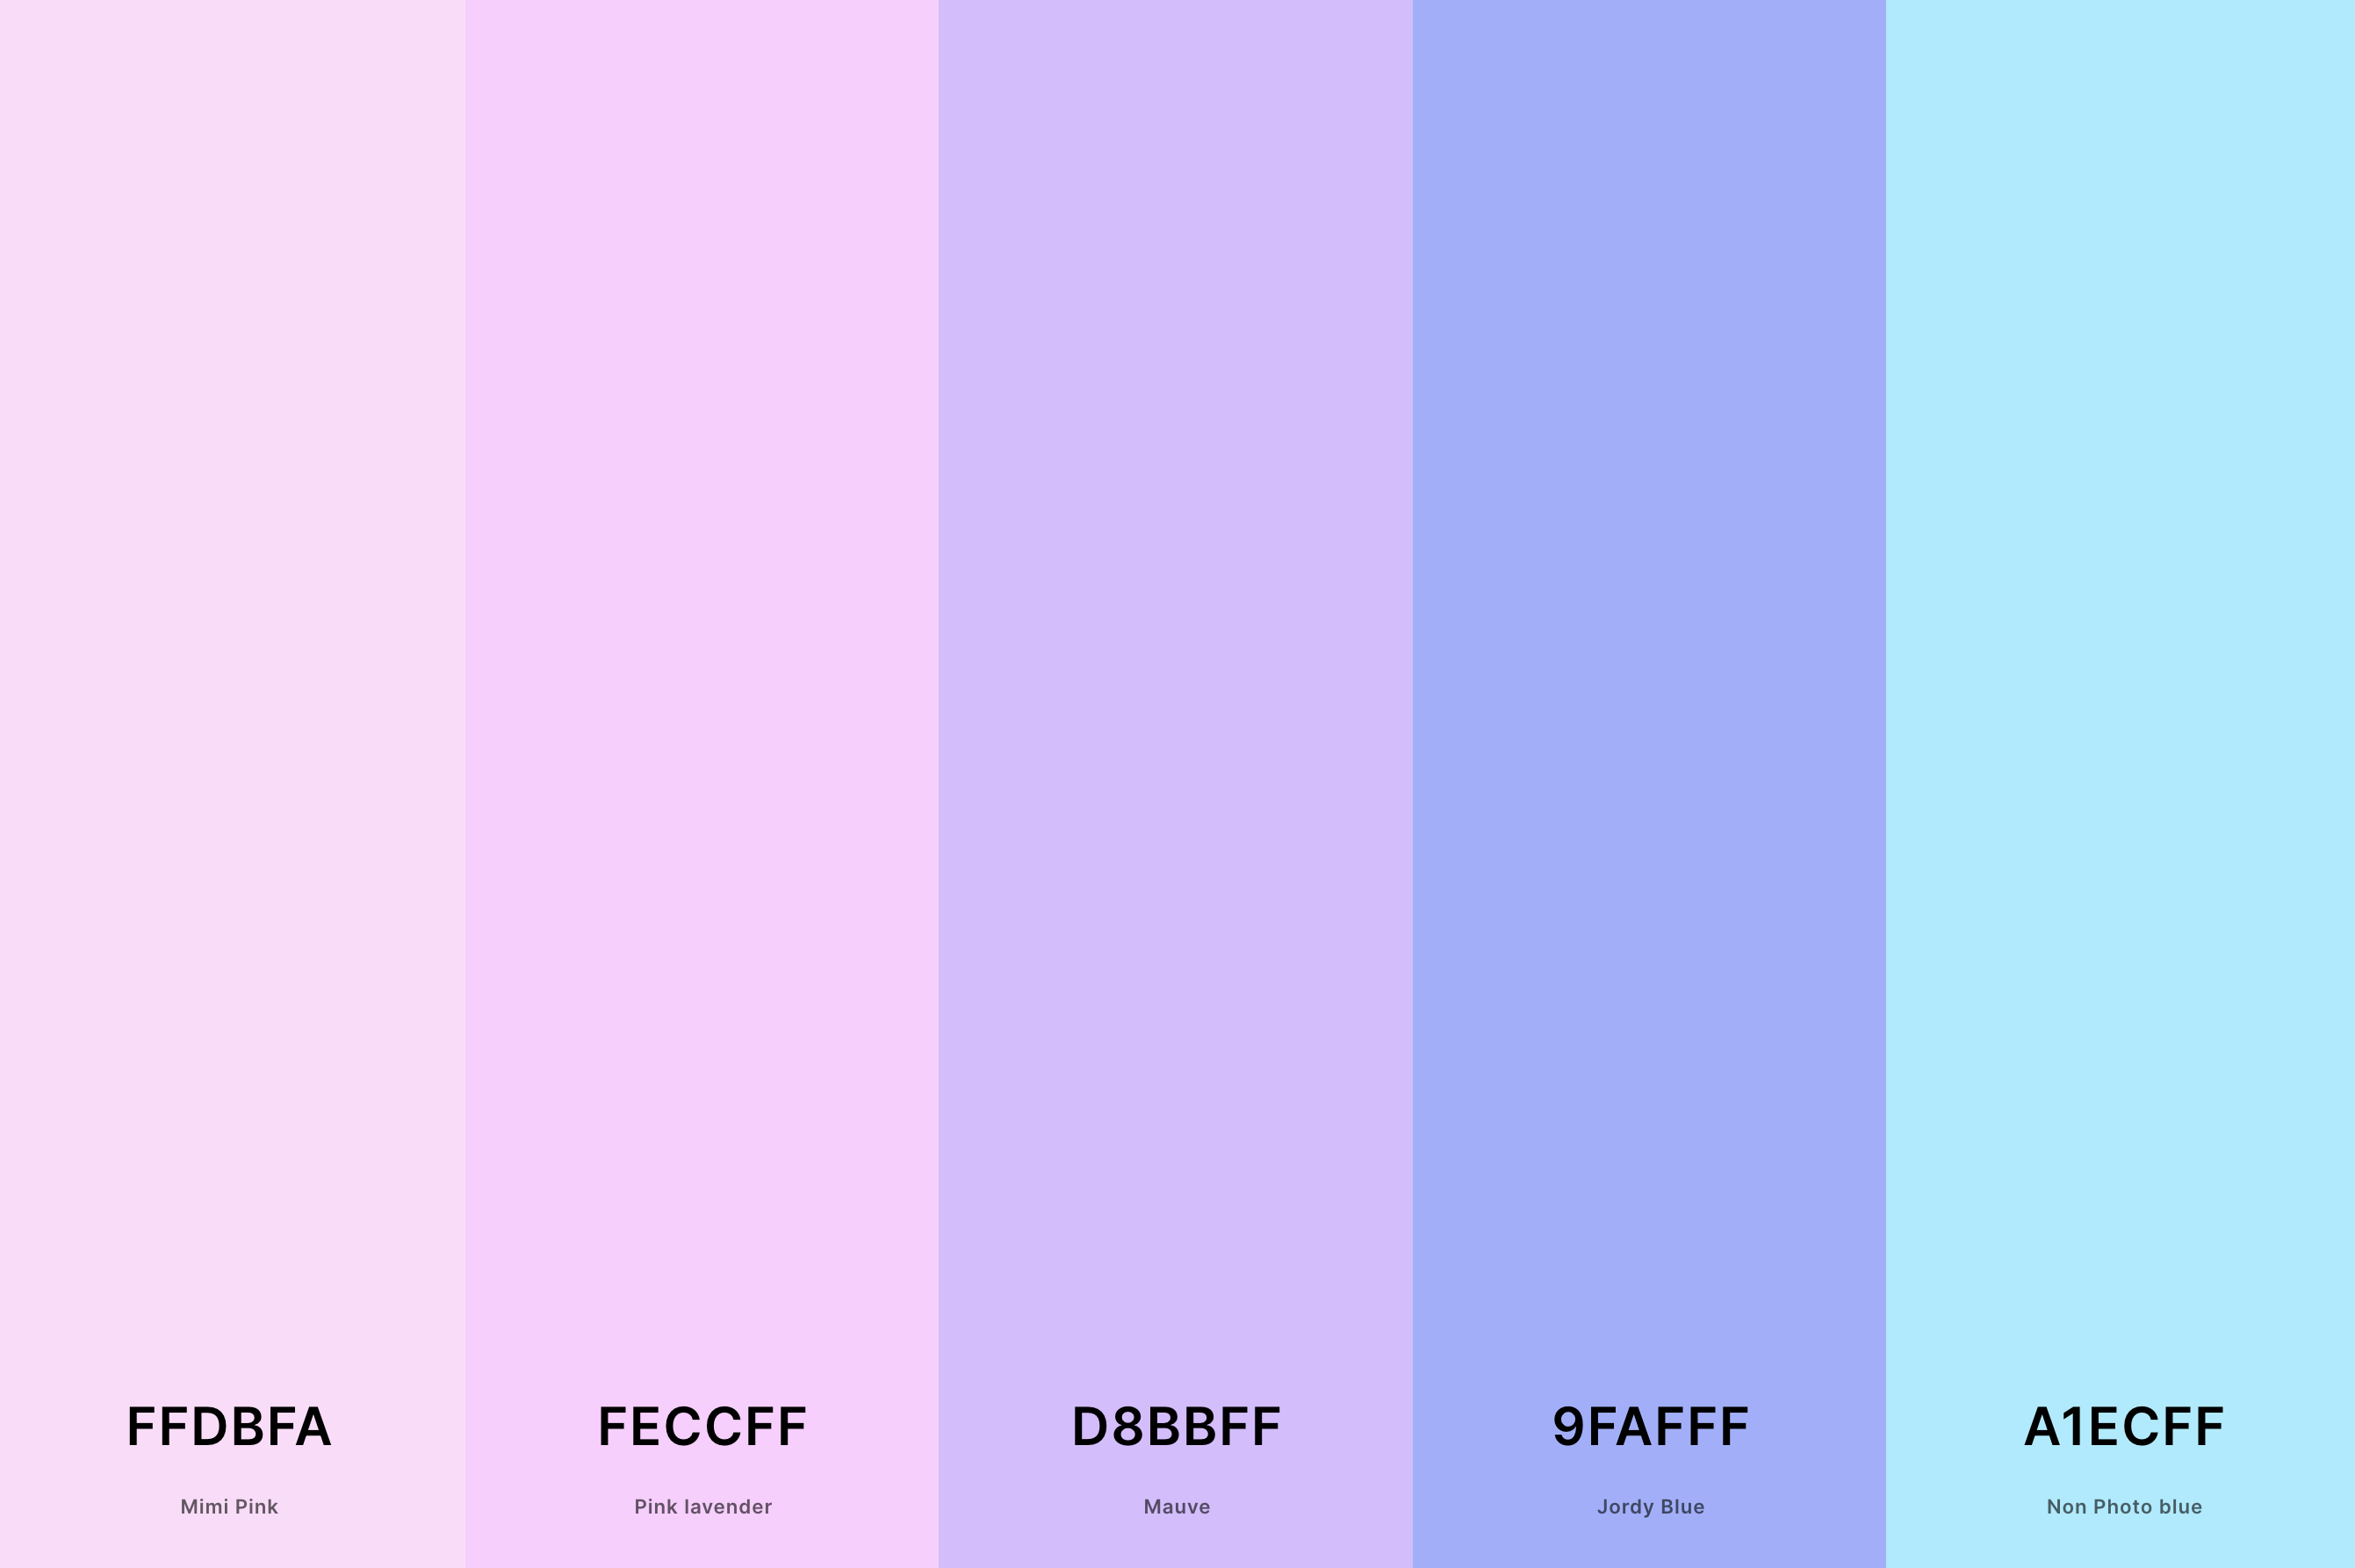 5. Aesthetic Pastel Color Palette Color Palette with Mimi Pink (Hex #FFDBFA) + Pink Lavender (Hex #FECCFF) + Mauve (Hex #D8BBFF) + Jordy Blue (Hex #9FAFFF) + Non Photo Blue (Hex #A1ECFF) Color Palette with Hex Codes